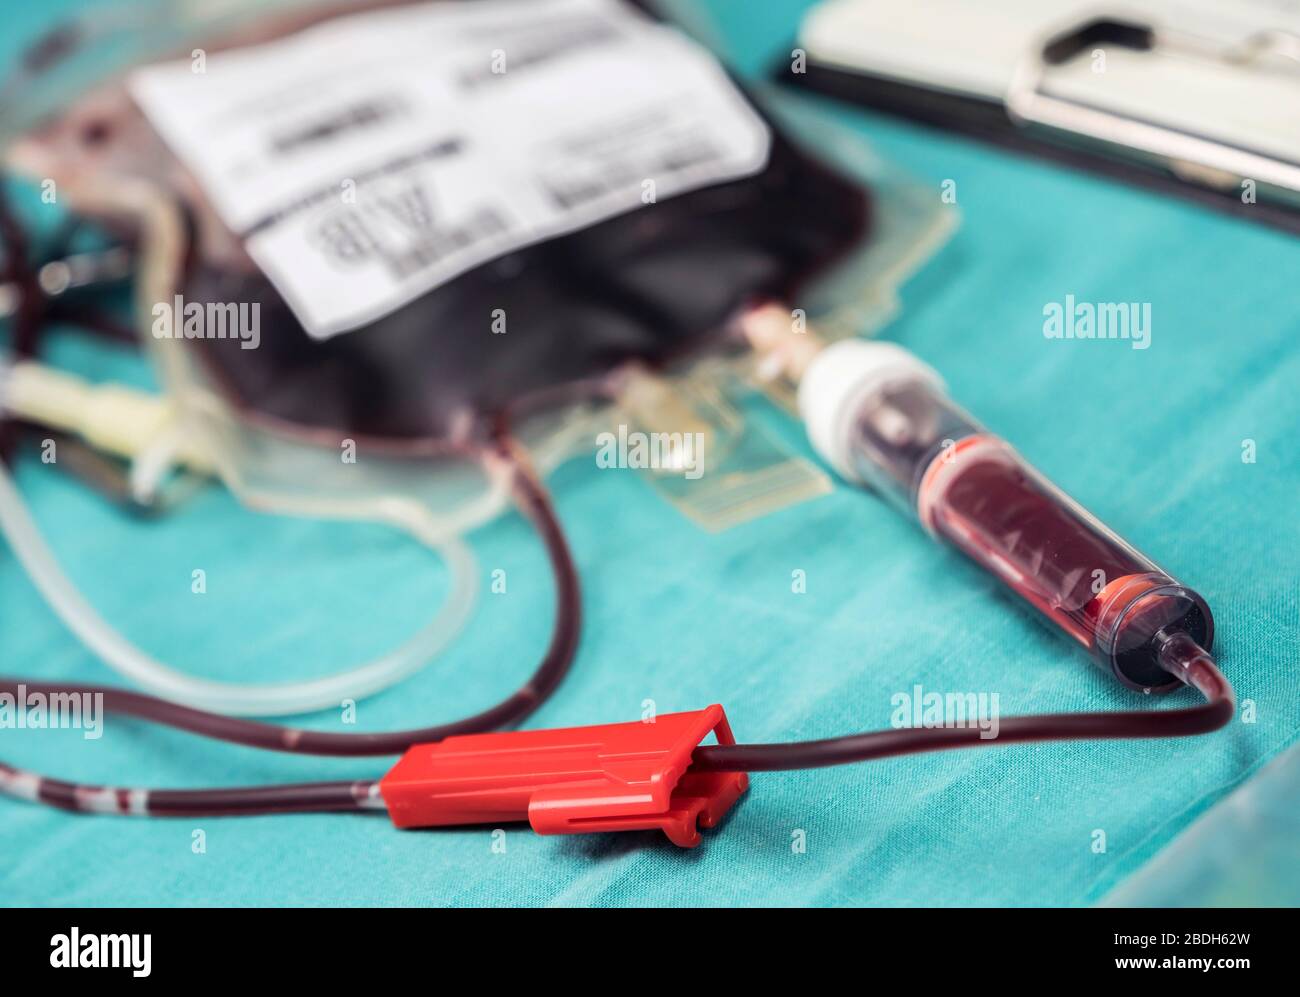 Svuotare sacca di sangue accanto al contagocce, immagine concettuale Foto Stock